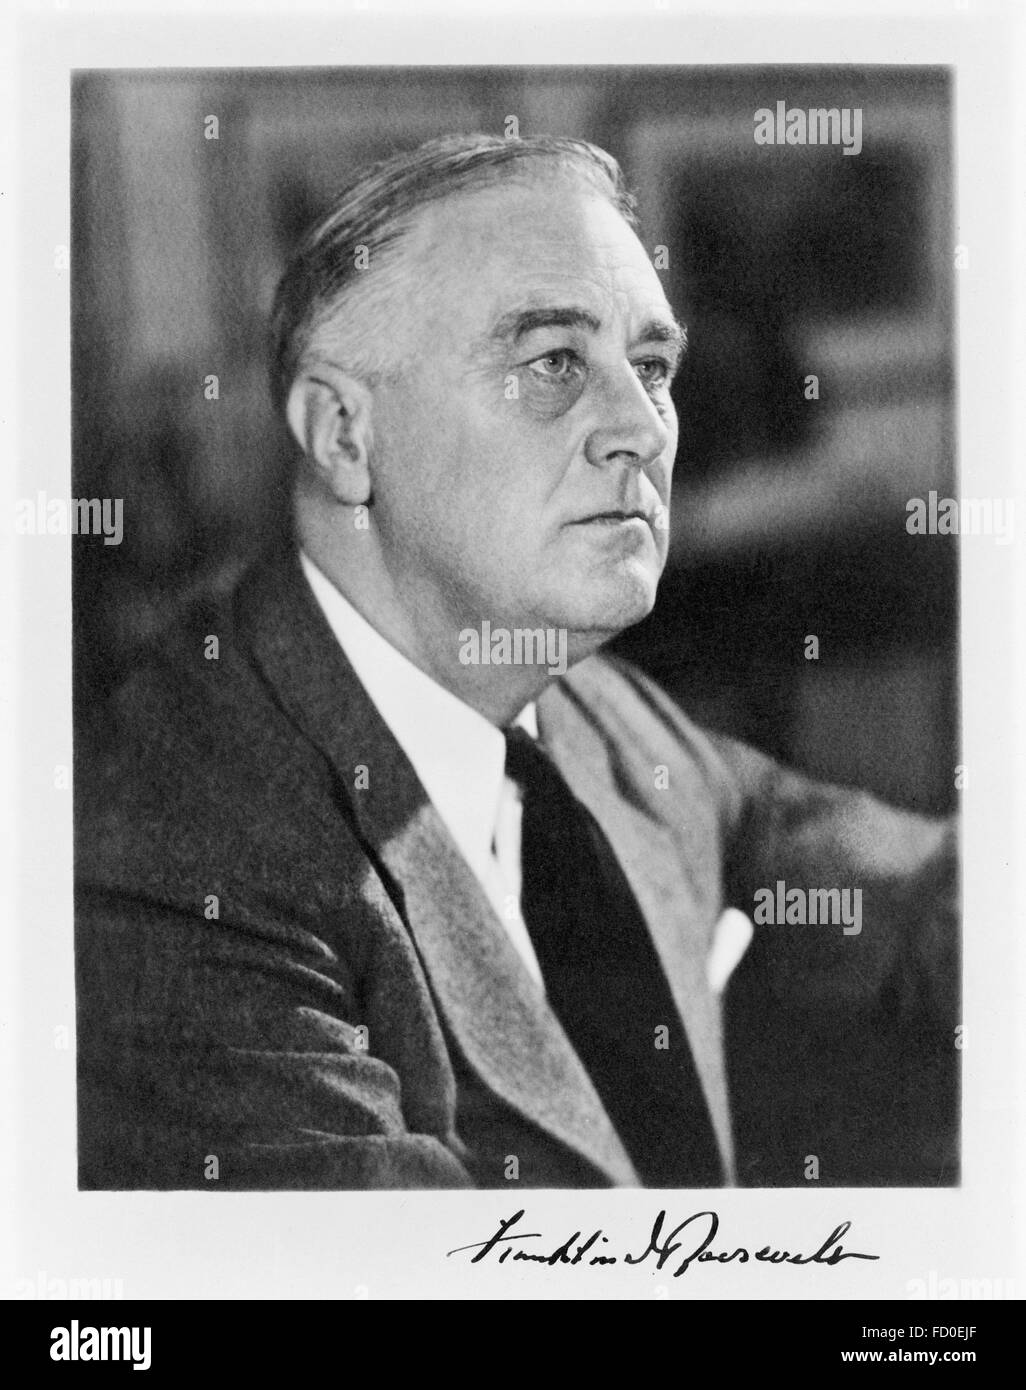 Franklin D Roosevelt. Firmato ritratto di Franklin D Roosevelt, il trentaduesimo PRESIDENTE DEGLI STATI UNITI D'AMERICA, c. 1941 Foto Stock